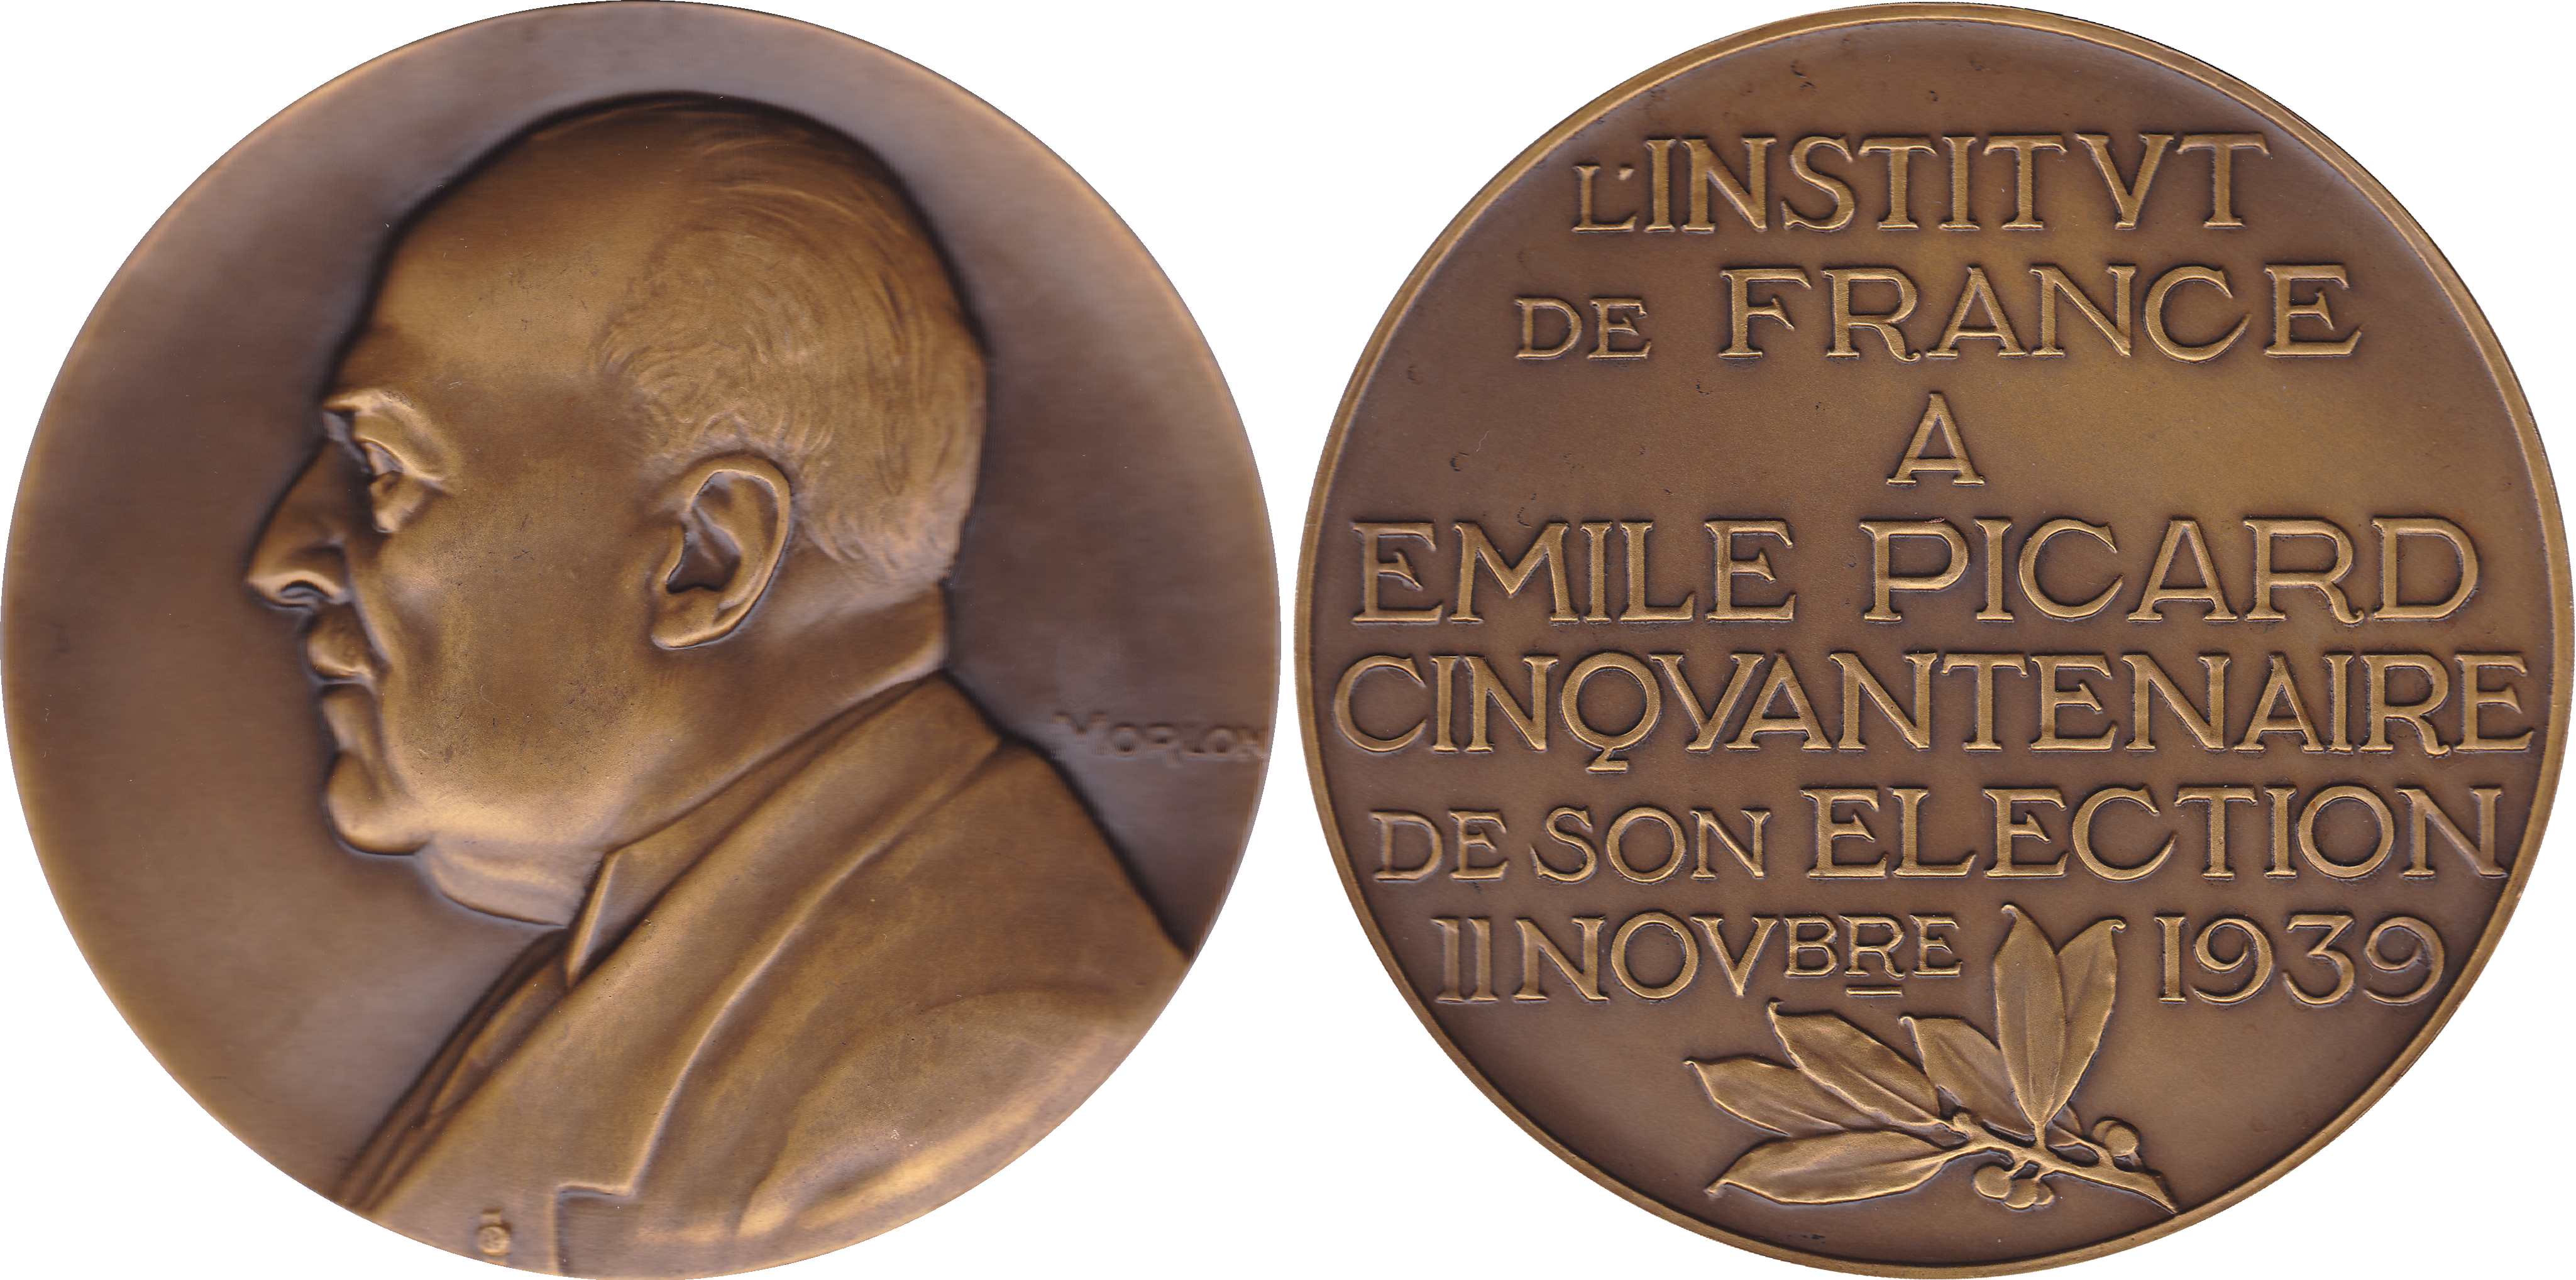 Emile Picard : Une médaille d’Alexandre Morlon datée de 1939